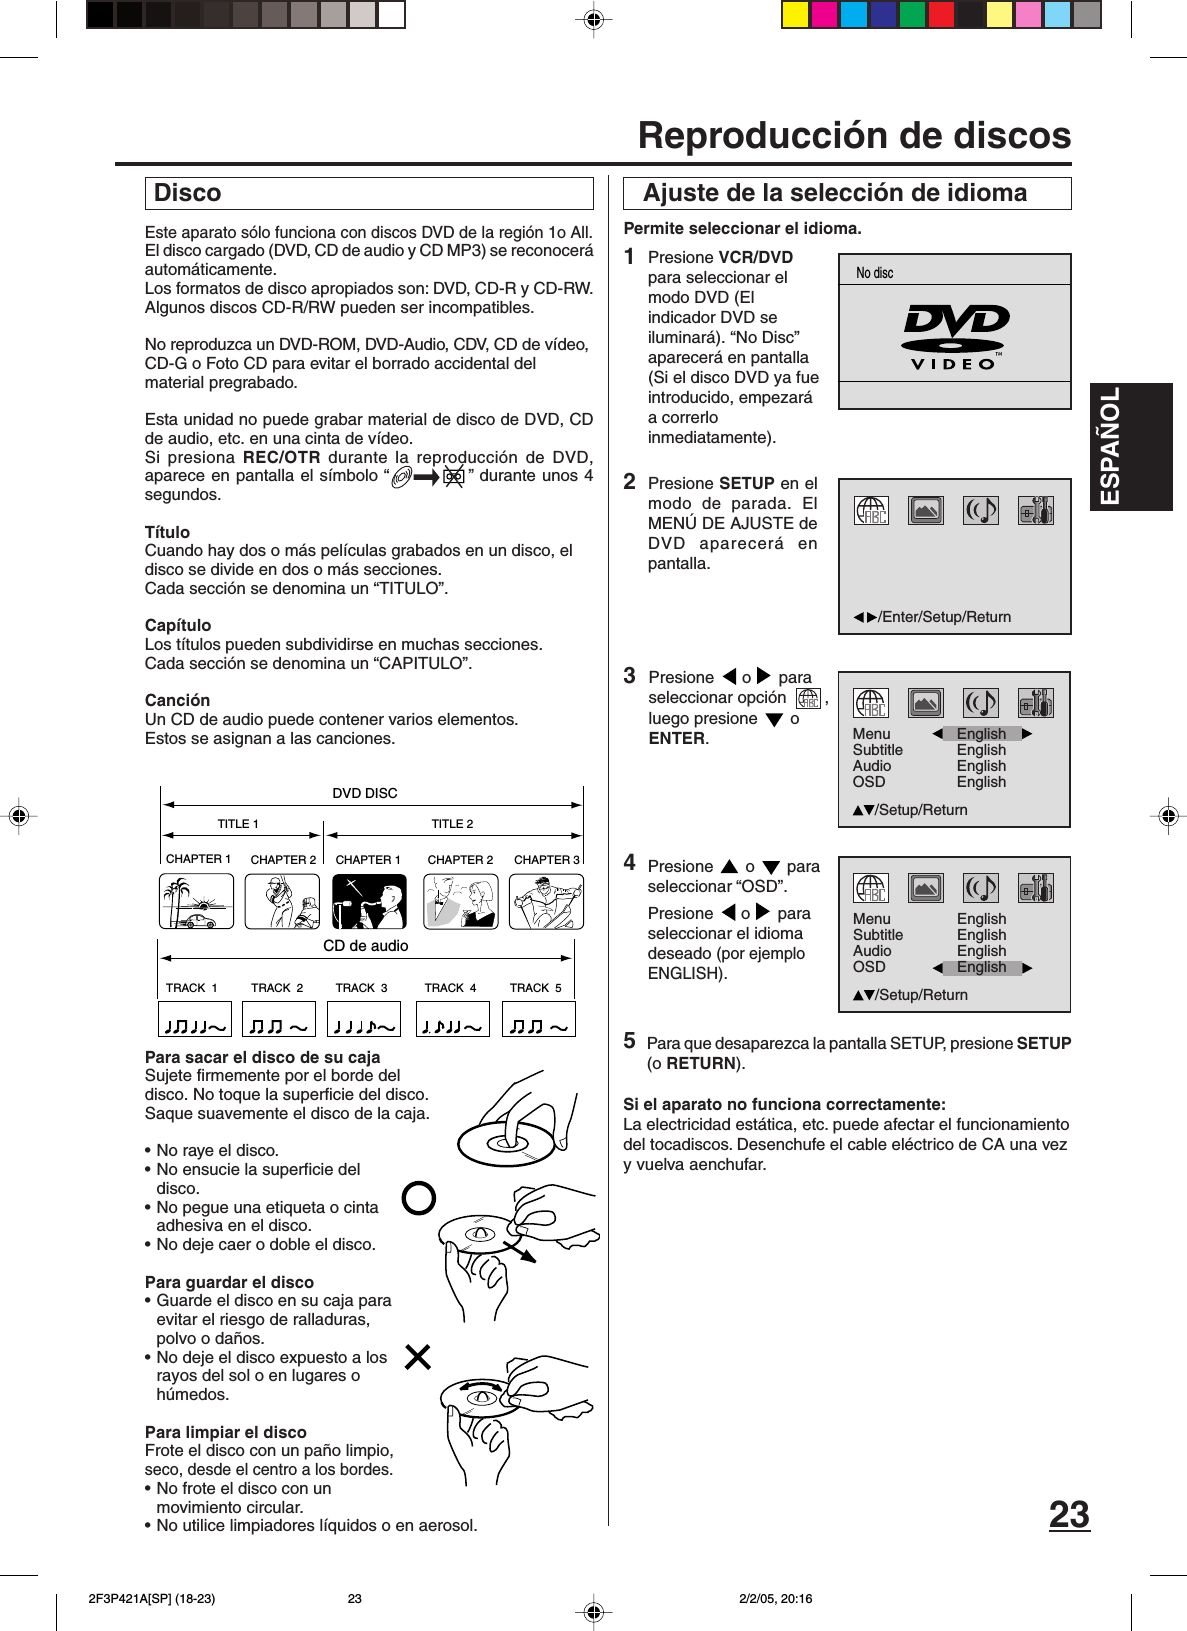 ESPAÑOL23Este aparato sólo funciona con discos DVD de la región 1o All.El disco cargado (DVD, CD de audio y CD MP3) se reconoceráautomáticamente.Los formatos de disco apropiados son: DVD, CD-R y CD-RW.Algunos discos CD-R/RW pueden ser incompatibles.No reproduzca un DVD-ROM, DVD-Audio, CDV, CD de vídeo,CD-G o Foto CD para evitar el borrado accidental delmaterial pregrabado.Esta unidad no puede grabar material de disco de DVD, CDde audio, etc. en una cinta de vídeo.Si presiona REC/OTR durante la reproducción de DVD,aparece en pantalla el símbolo “ ” durante unos 4segundos.TítuloCuando hay dos o más películas grabados en un disco, eldisco se divide en dos o más secciones.Cada sección se denomina un “TITULO”.CapítuloLos títulos pueden subdividirse en muchas secciones.Cada sección se denomina un “CAPITULO”.CanciónUn CD de audio puede contener varios elementos.Estos se asignan a las canciones.Para sacar el disco de su cajaSujete firmemente por el borde deldisco. No toque la superficie del disco.Saque suavemente el disco de la caja.•No raye el disco.•No ensucie la superficie deldisco.• No pegue una etiqueta o cintaadhesiva en el disco.• No deje caer o doble el disco.Para guardar el disco•Guarde el disco en su caja paraevitar el riesgo de ralladuras,polvo o daños.•No deje el disco expuesto a losrayos del sol o en lugares ohúmedos.Para limpiar el discoFrote el disco con un paño limpio,seco, desde el centro a los bordes.•No frote el disco con unmovimiento circular.•No utilice limpiadores líquidos o en aerosol. Disco Ajuste de la selección de idioma4Permite seleccionar el idioma.Presione   o   paraseleccionar “OSD”.Presione  o  paraseleccionar el idiomadeseado (por ejemploENGLISH).2Presione SETUP en elmodo de parada. ElMENÚ DE AJUSTE deDVD aparecerá enpantalla.Para que desaparezca la pantalla SETUP, presione SETUP(o RETURN).Si el aparato no funciona correctamente:La electricidad estática, etc. puede afectar el funcionamientodel tocadiscos. Desenchufe el cable eléctrico de CA una vezy vuelva aenchufar.3Presione  o  paraseleccionar opción  ,luego presione   oENTER.1Presione VCR/DVDpara seleccionar elmodo DVD (Elindicador DVD seiluminará). “No Disc”aparecerá en pantalla(Si el disco DVD ya fueintroducido, empezaráa correrloinmediatamente).Reproducción de discosCHAPTER 1TITLE 1 TITLE 2DVD DISCCHAPTER 2 CHAPTER 2 CHAPTER 3CHAPTER 1TRACK  1 TRACK  2 TRACK  3 TRACK  4 TRACK  5CD de audio5/Enter/Setup/ReturnNo discMenuSubtitleAudioOSDEnglishEnglishEnglish/Setup/ReturnEnglishMenuSubtitleAudioOSDEnglishEnglish/Setup/ReturnEnglishEnglish 2F3P421A[SP] (18-23) 2/2/05, 20:1623